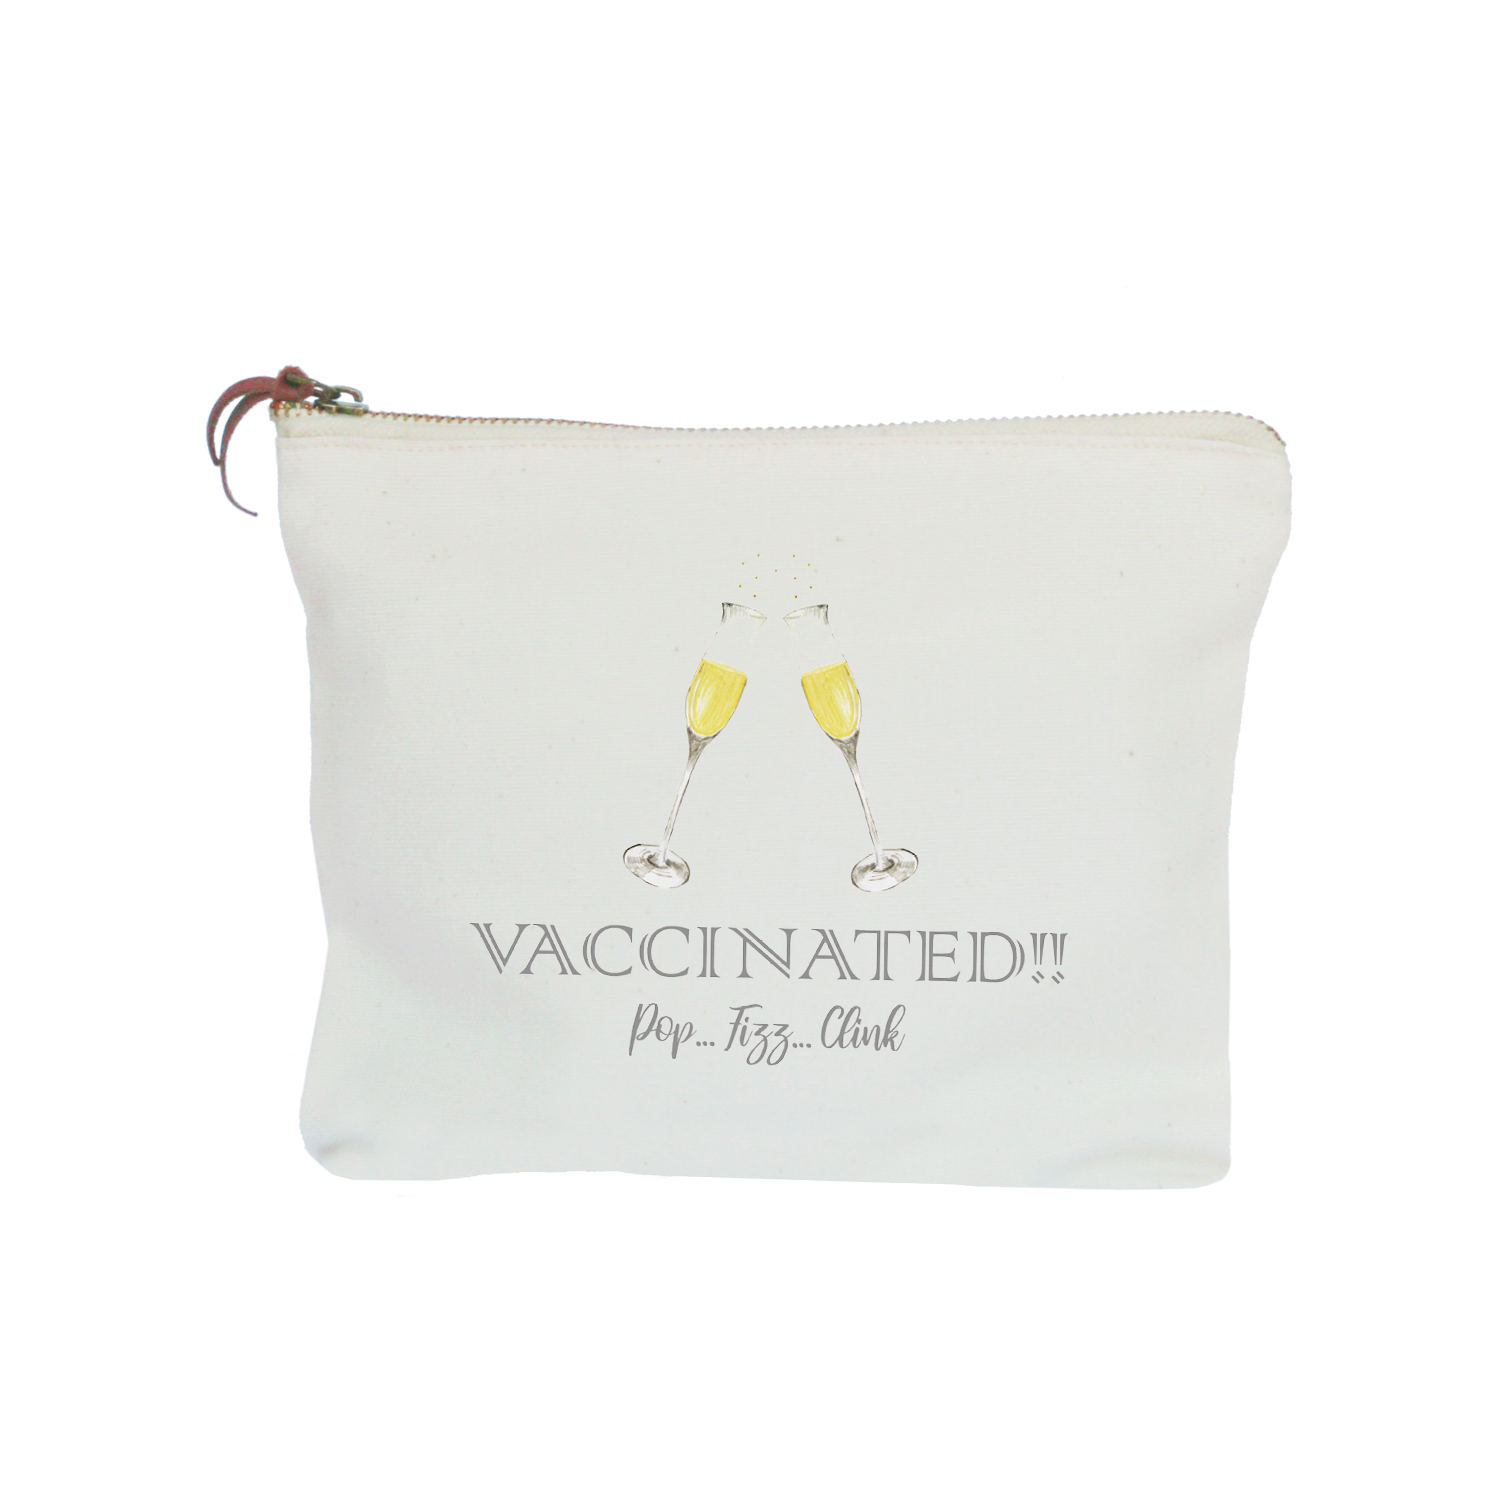 vaccine pop fizz clink zipper pouch